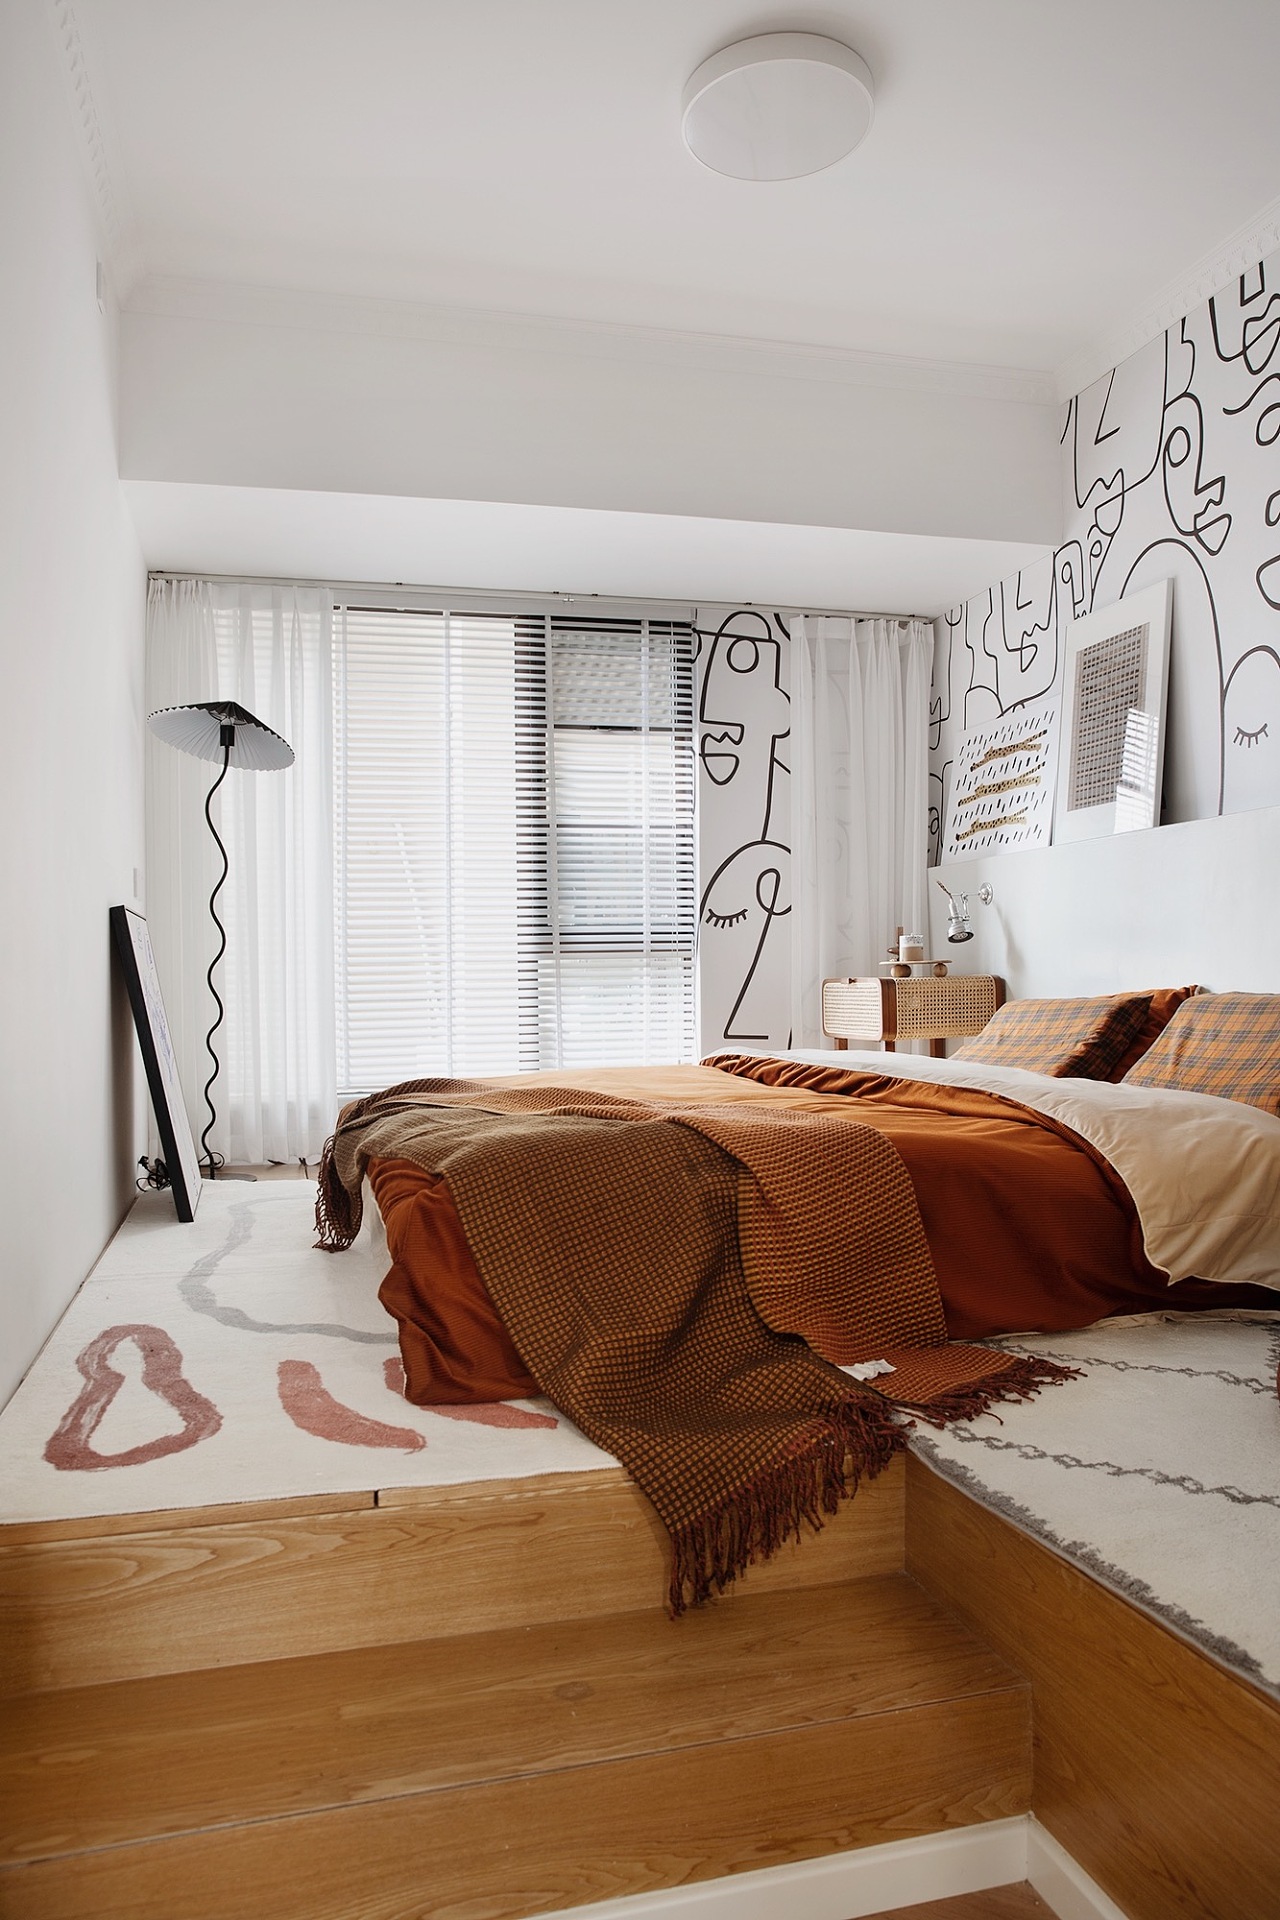 侧卧同样以橘色作为主题，白色背景墙卡通造型设计，橘色床品成为空间点缀。